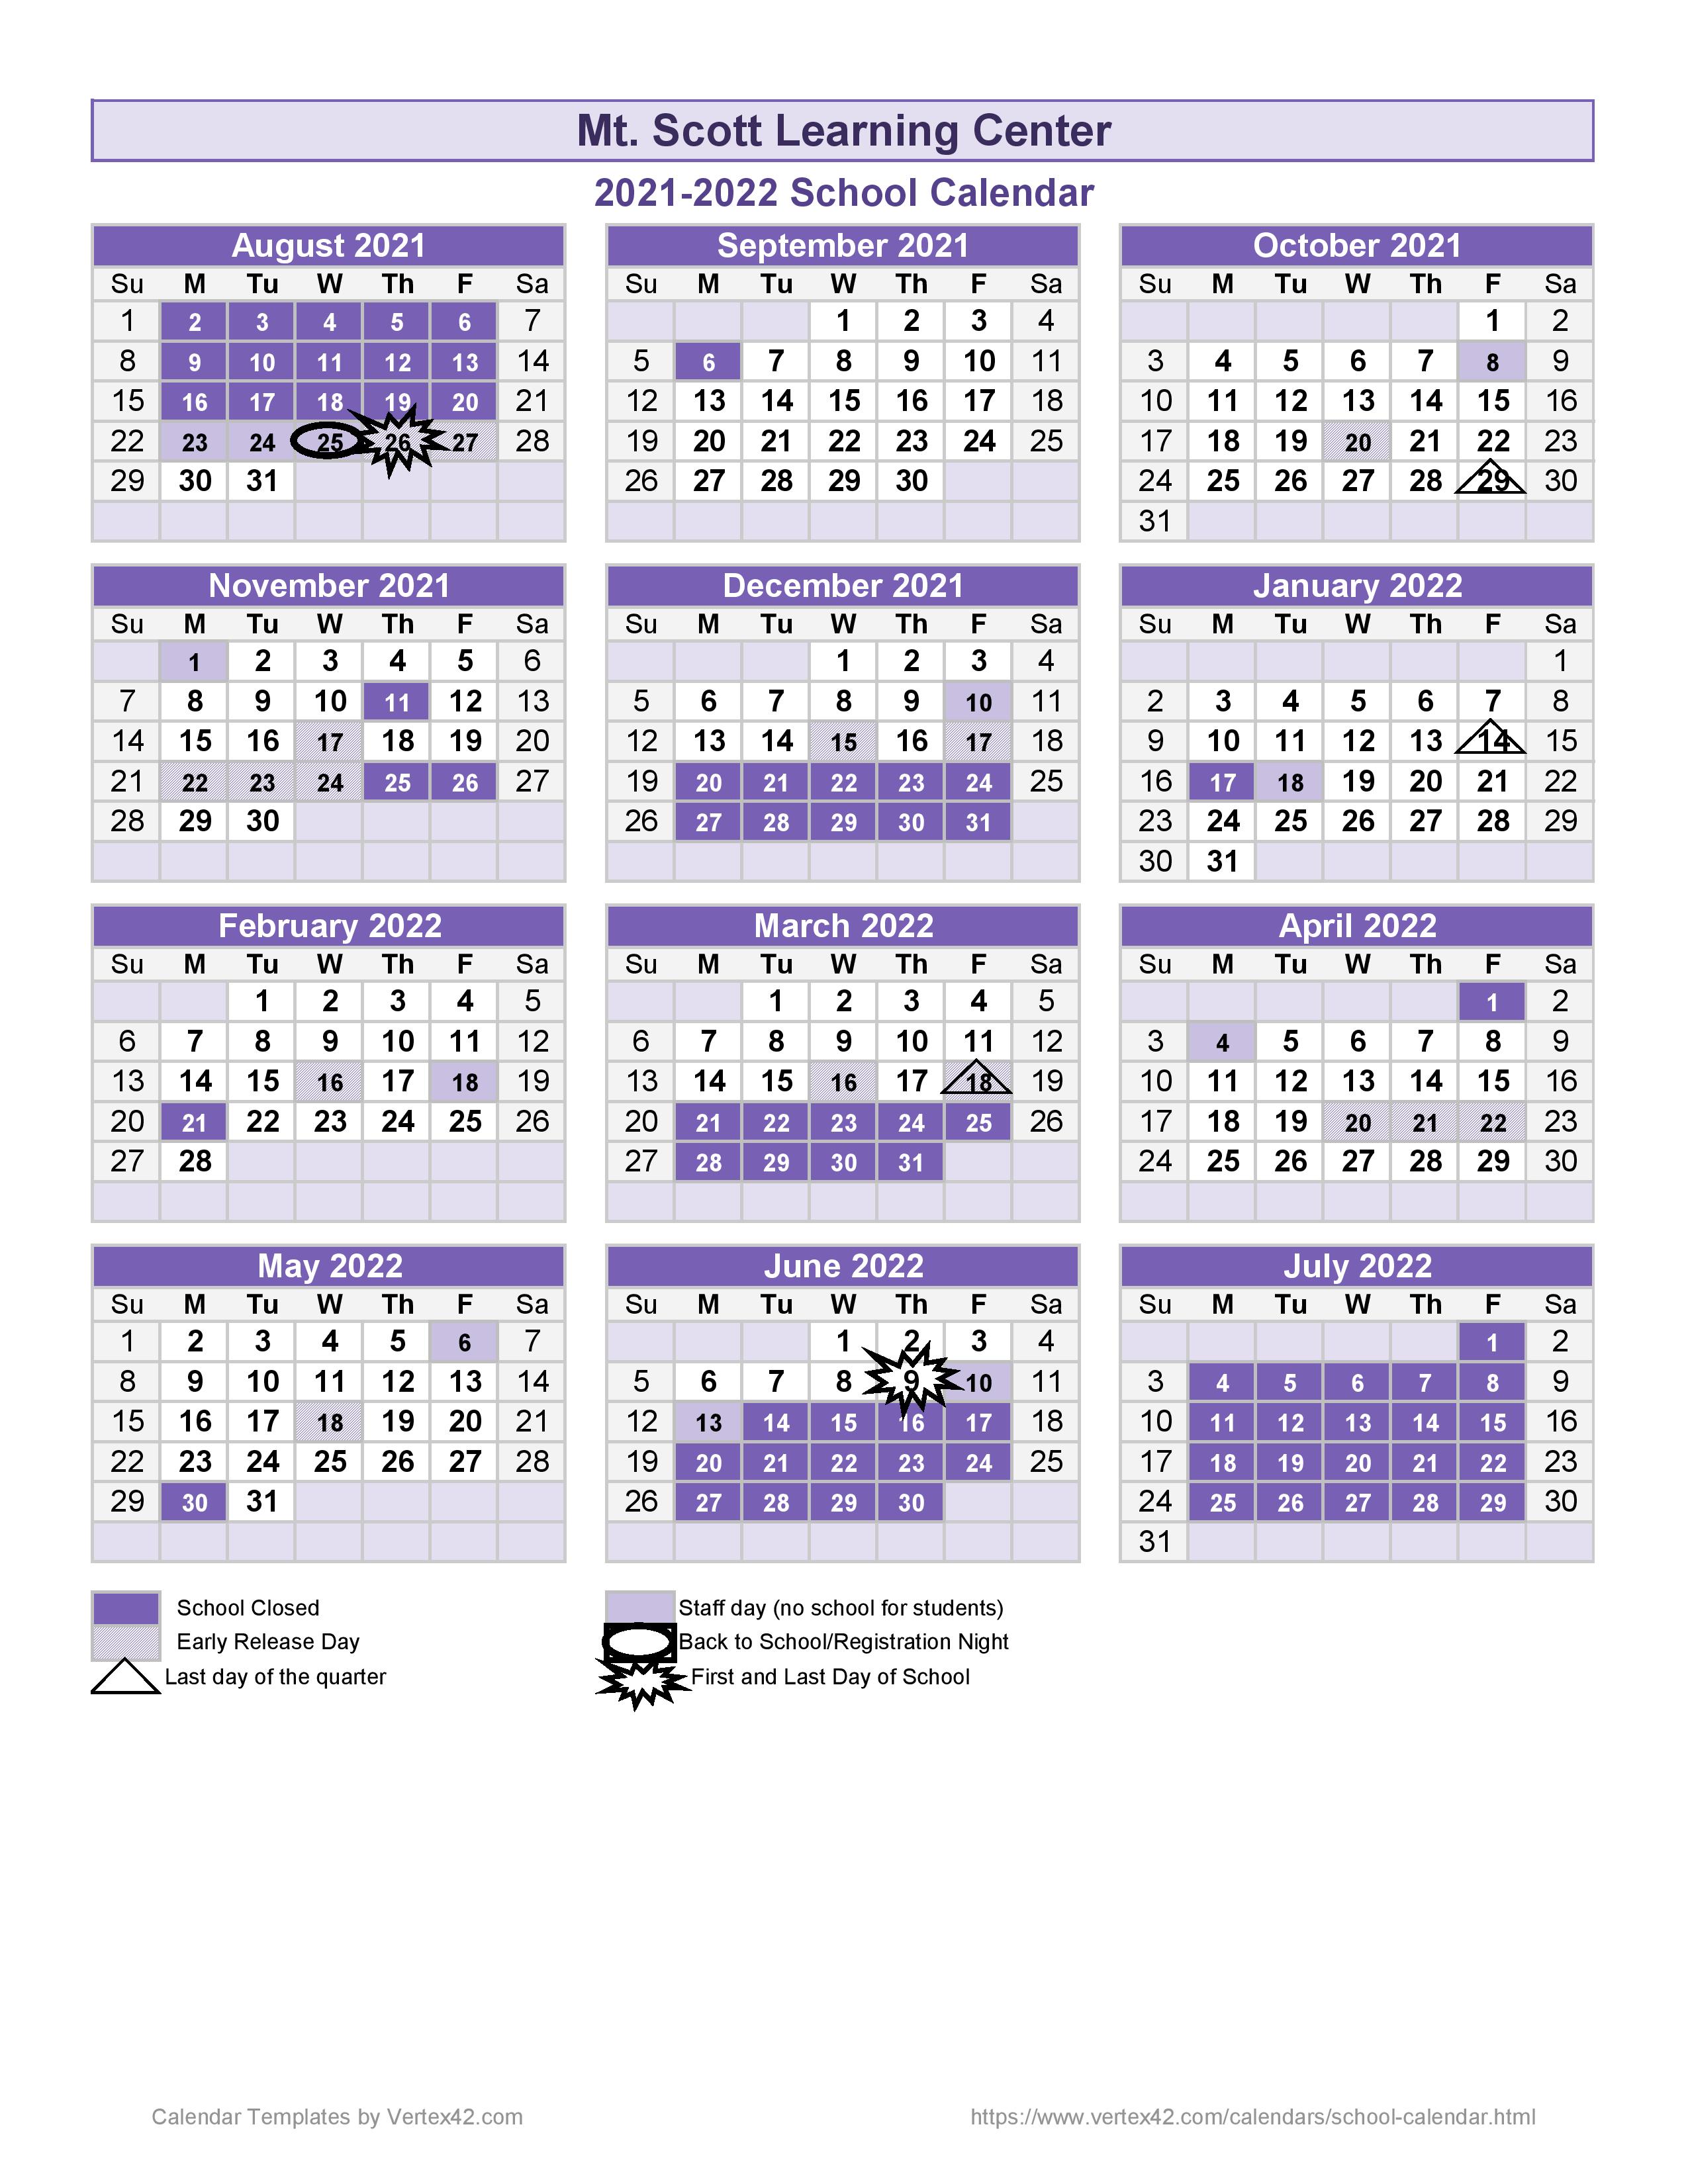 Academic Calendar - Mt Scott Learning Center